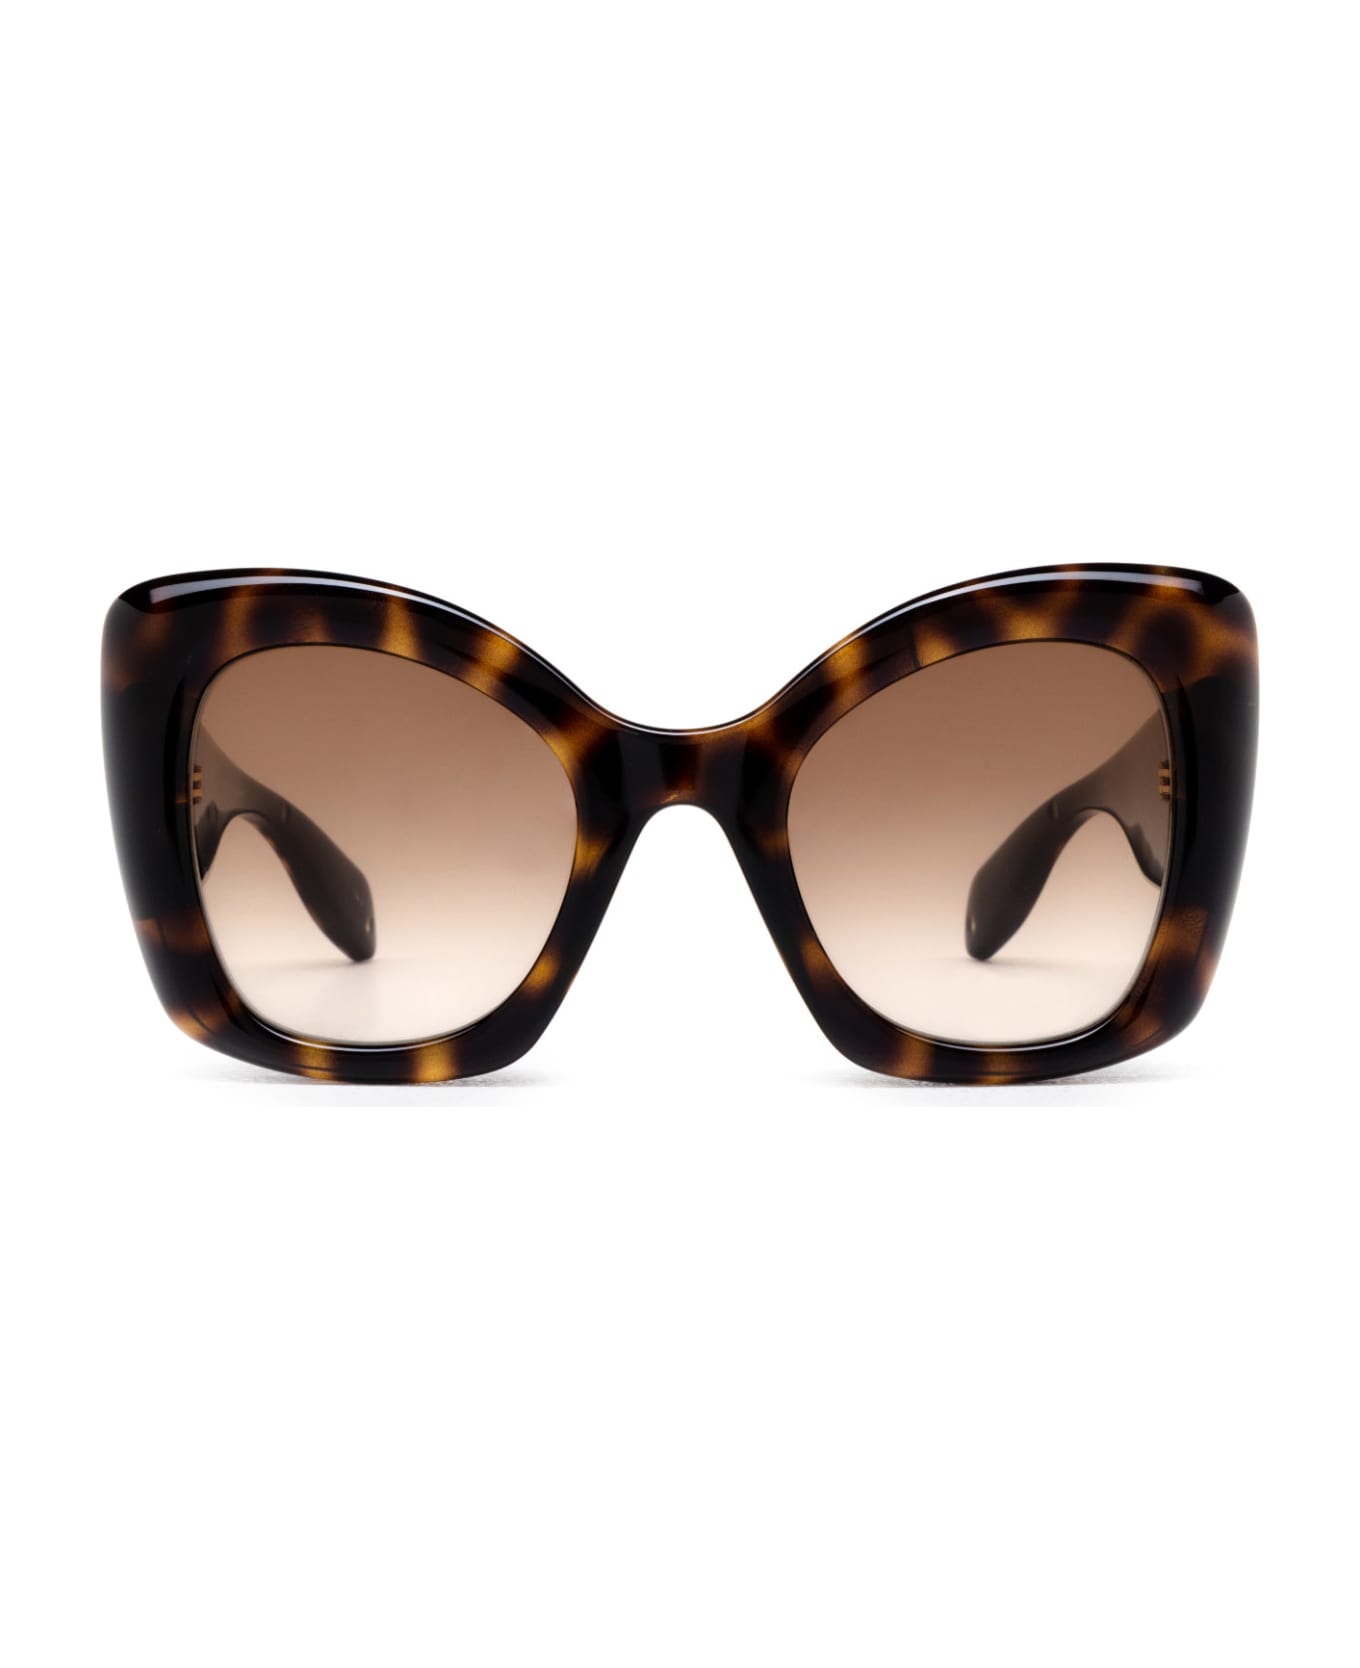 Alexander McQueen Eyewear Am0402s Havana Sunglasses - Havana